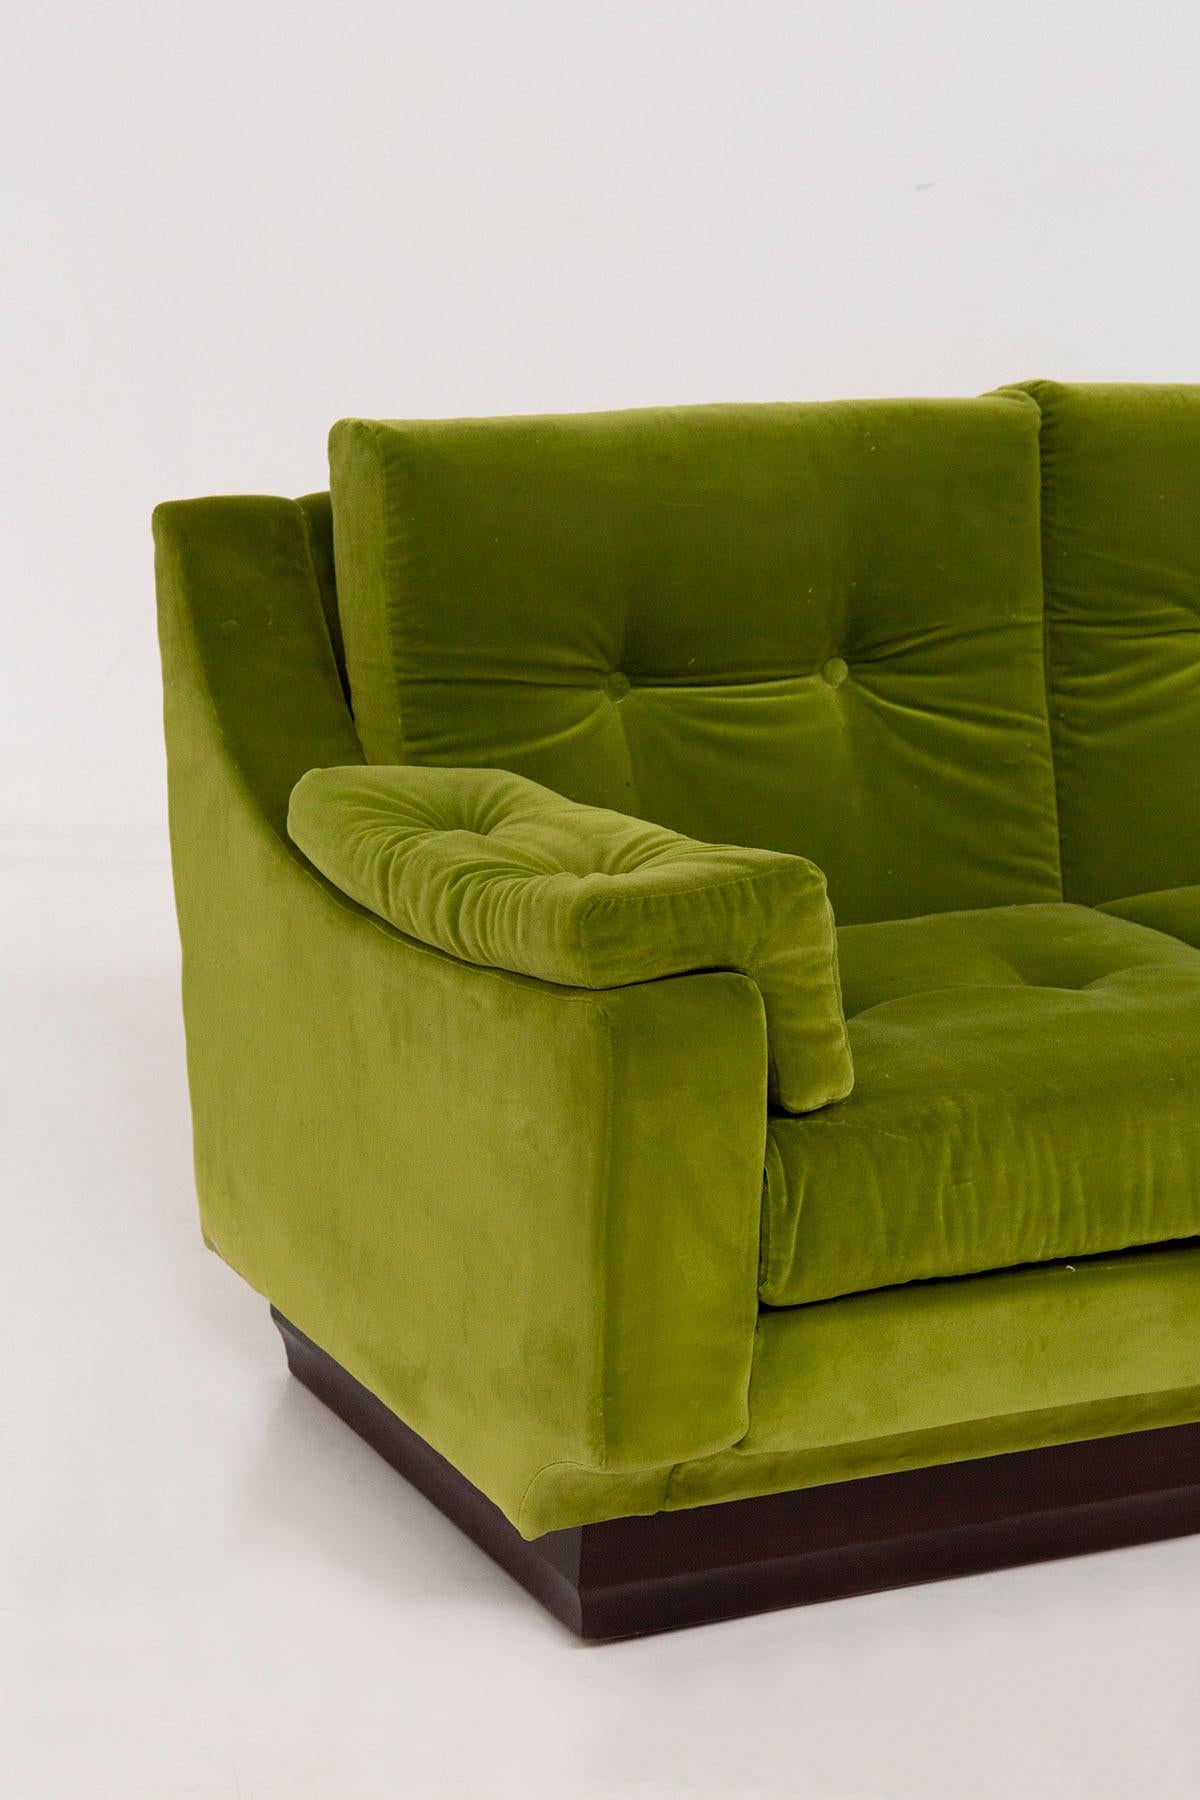 Italian Sofa in Green Velvet and Wood For Sale 1